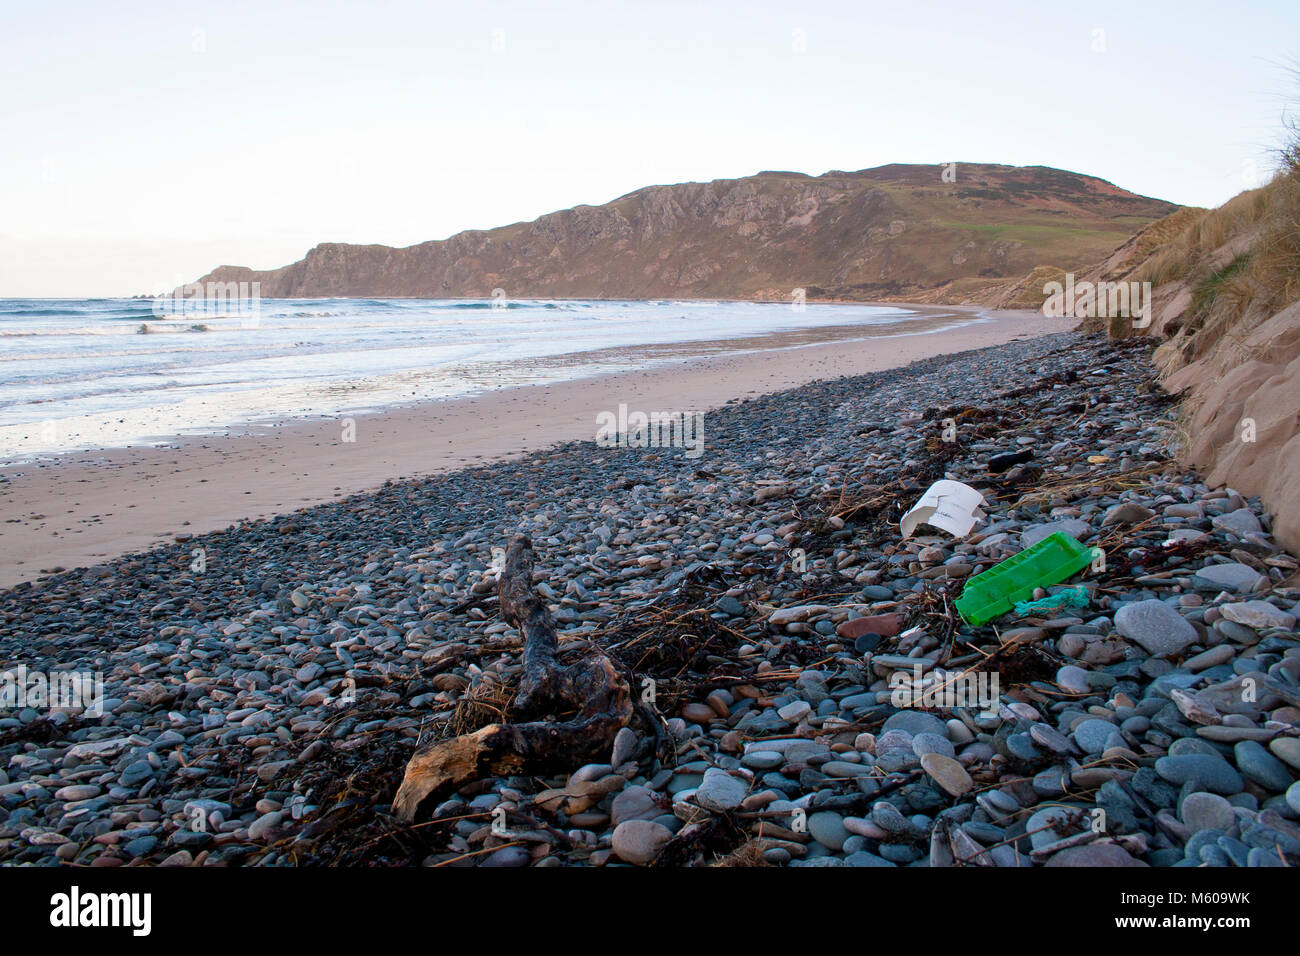 La pollution des océans de plastique sur une plage près de Malin dans le comté de Donegal en Irlande Banque D'Images